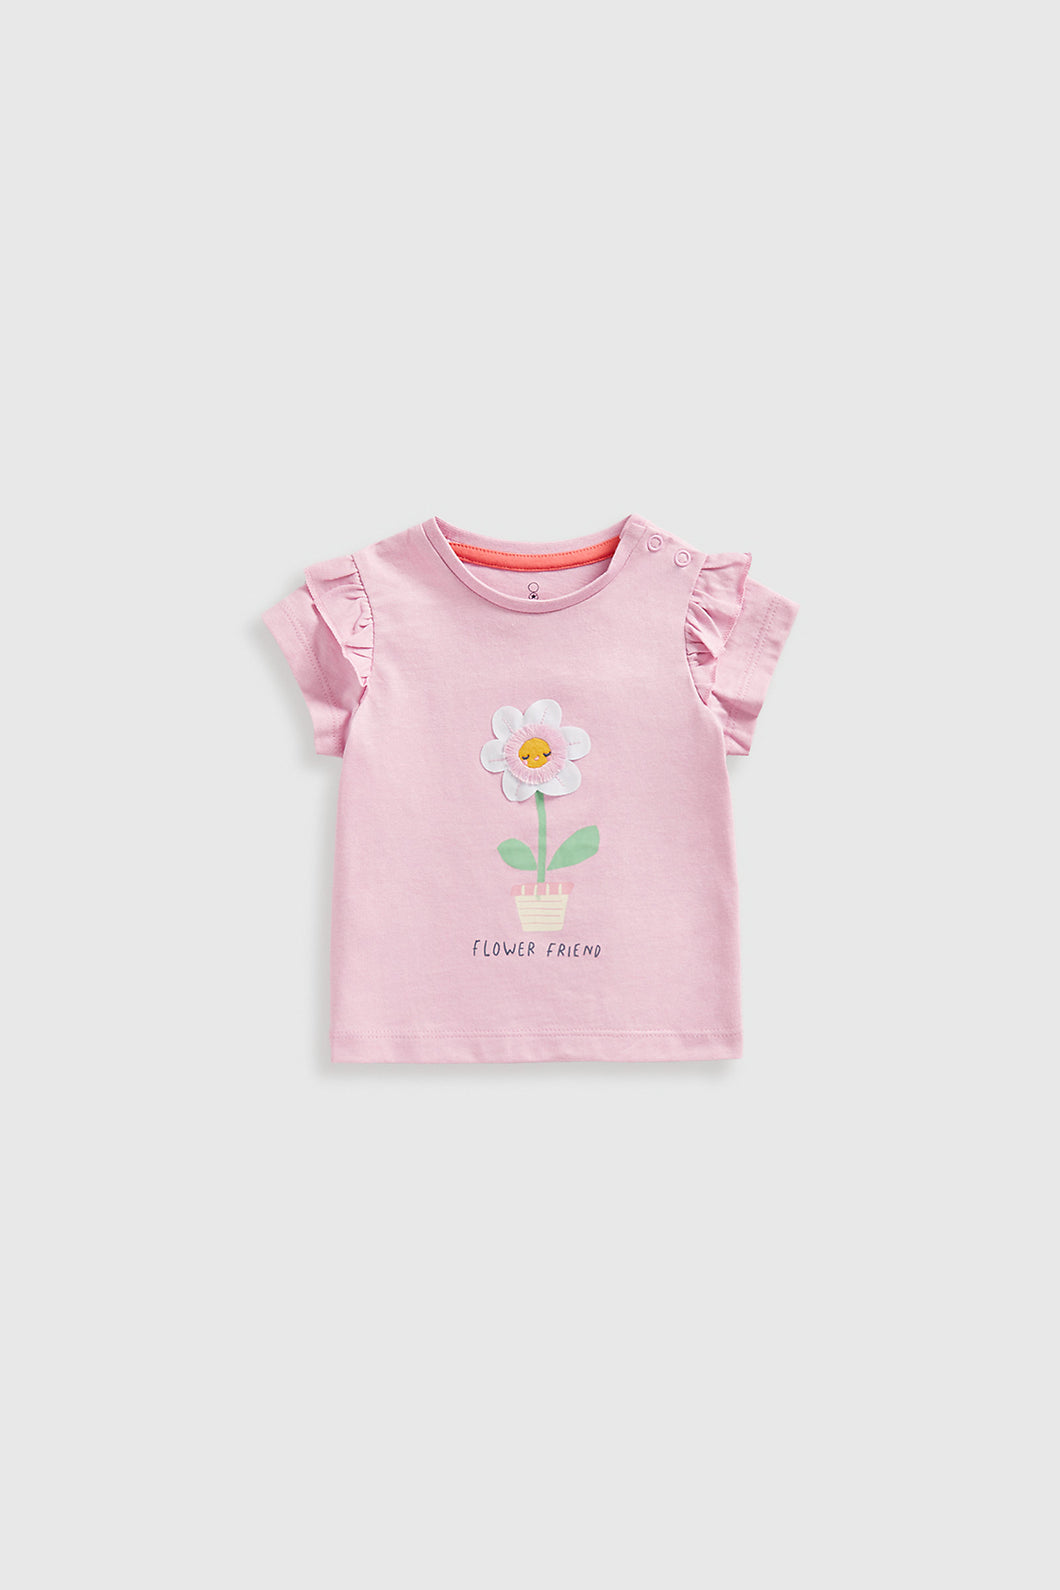 Mothercare Flower Friend T-Shirt